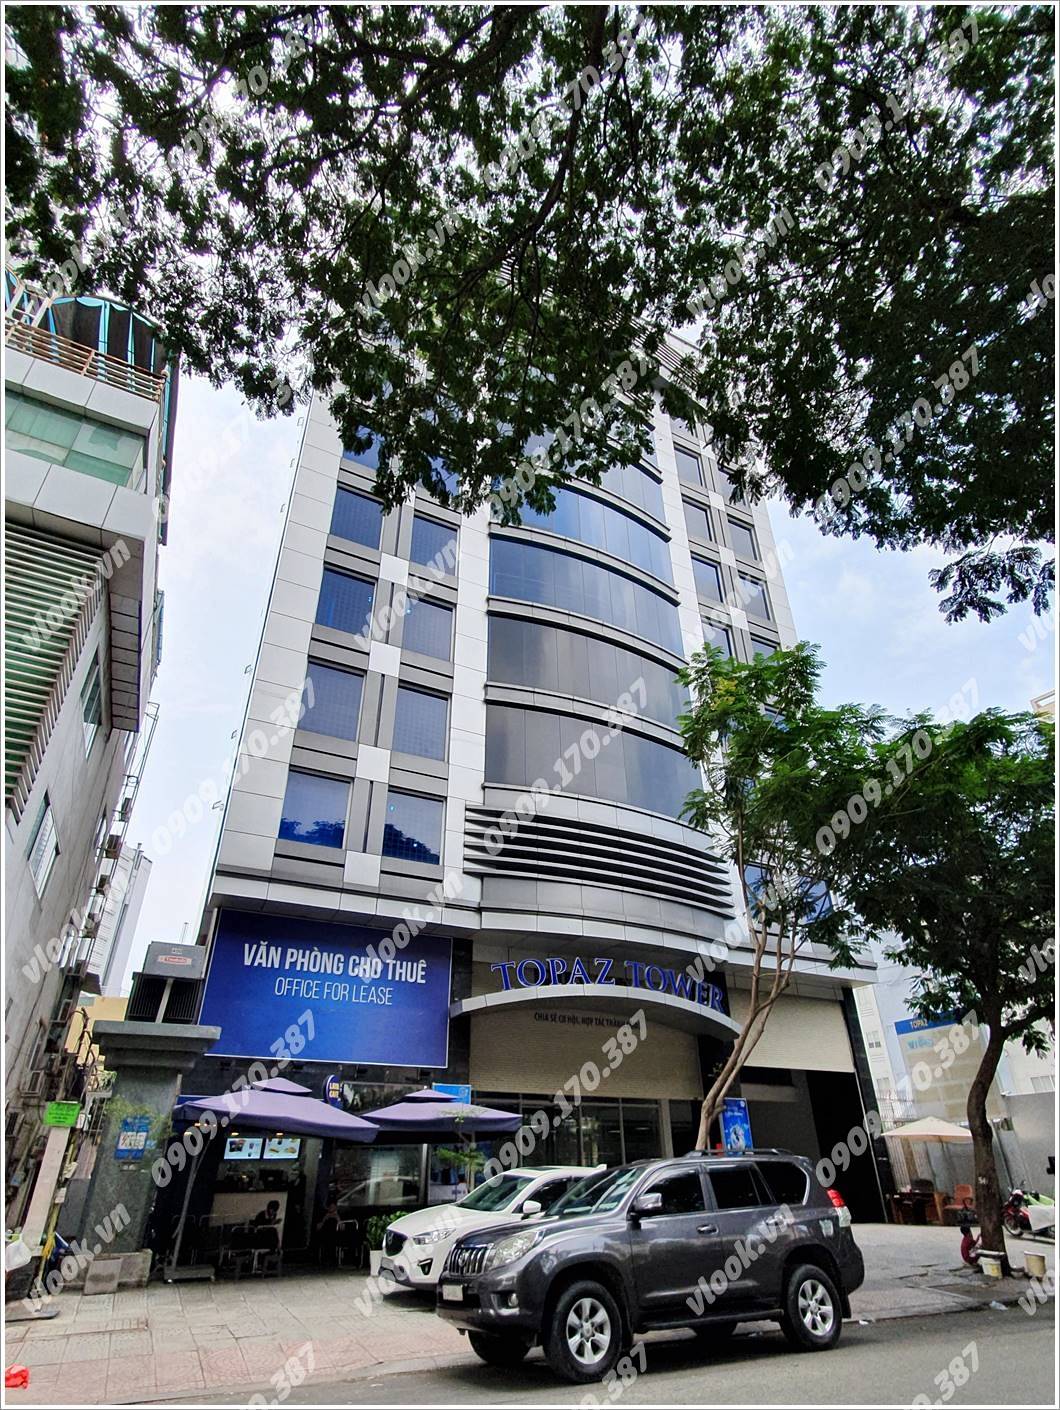 Cao ốc cho thuê văn phòng Topaz Tower, Phó Đức Chính, Quận 1, TPHCM - vlook.vn